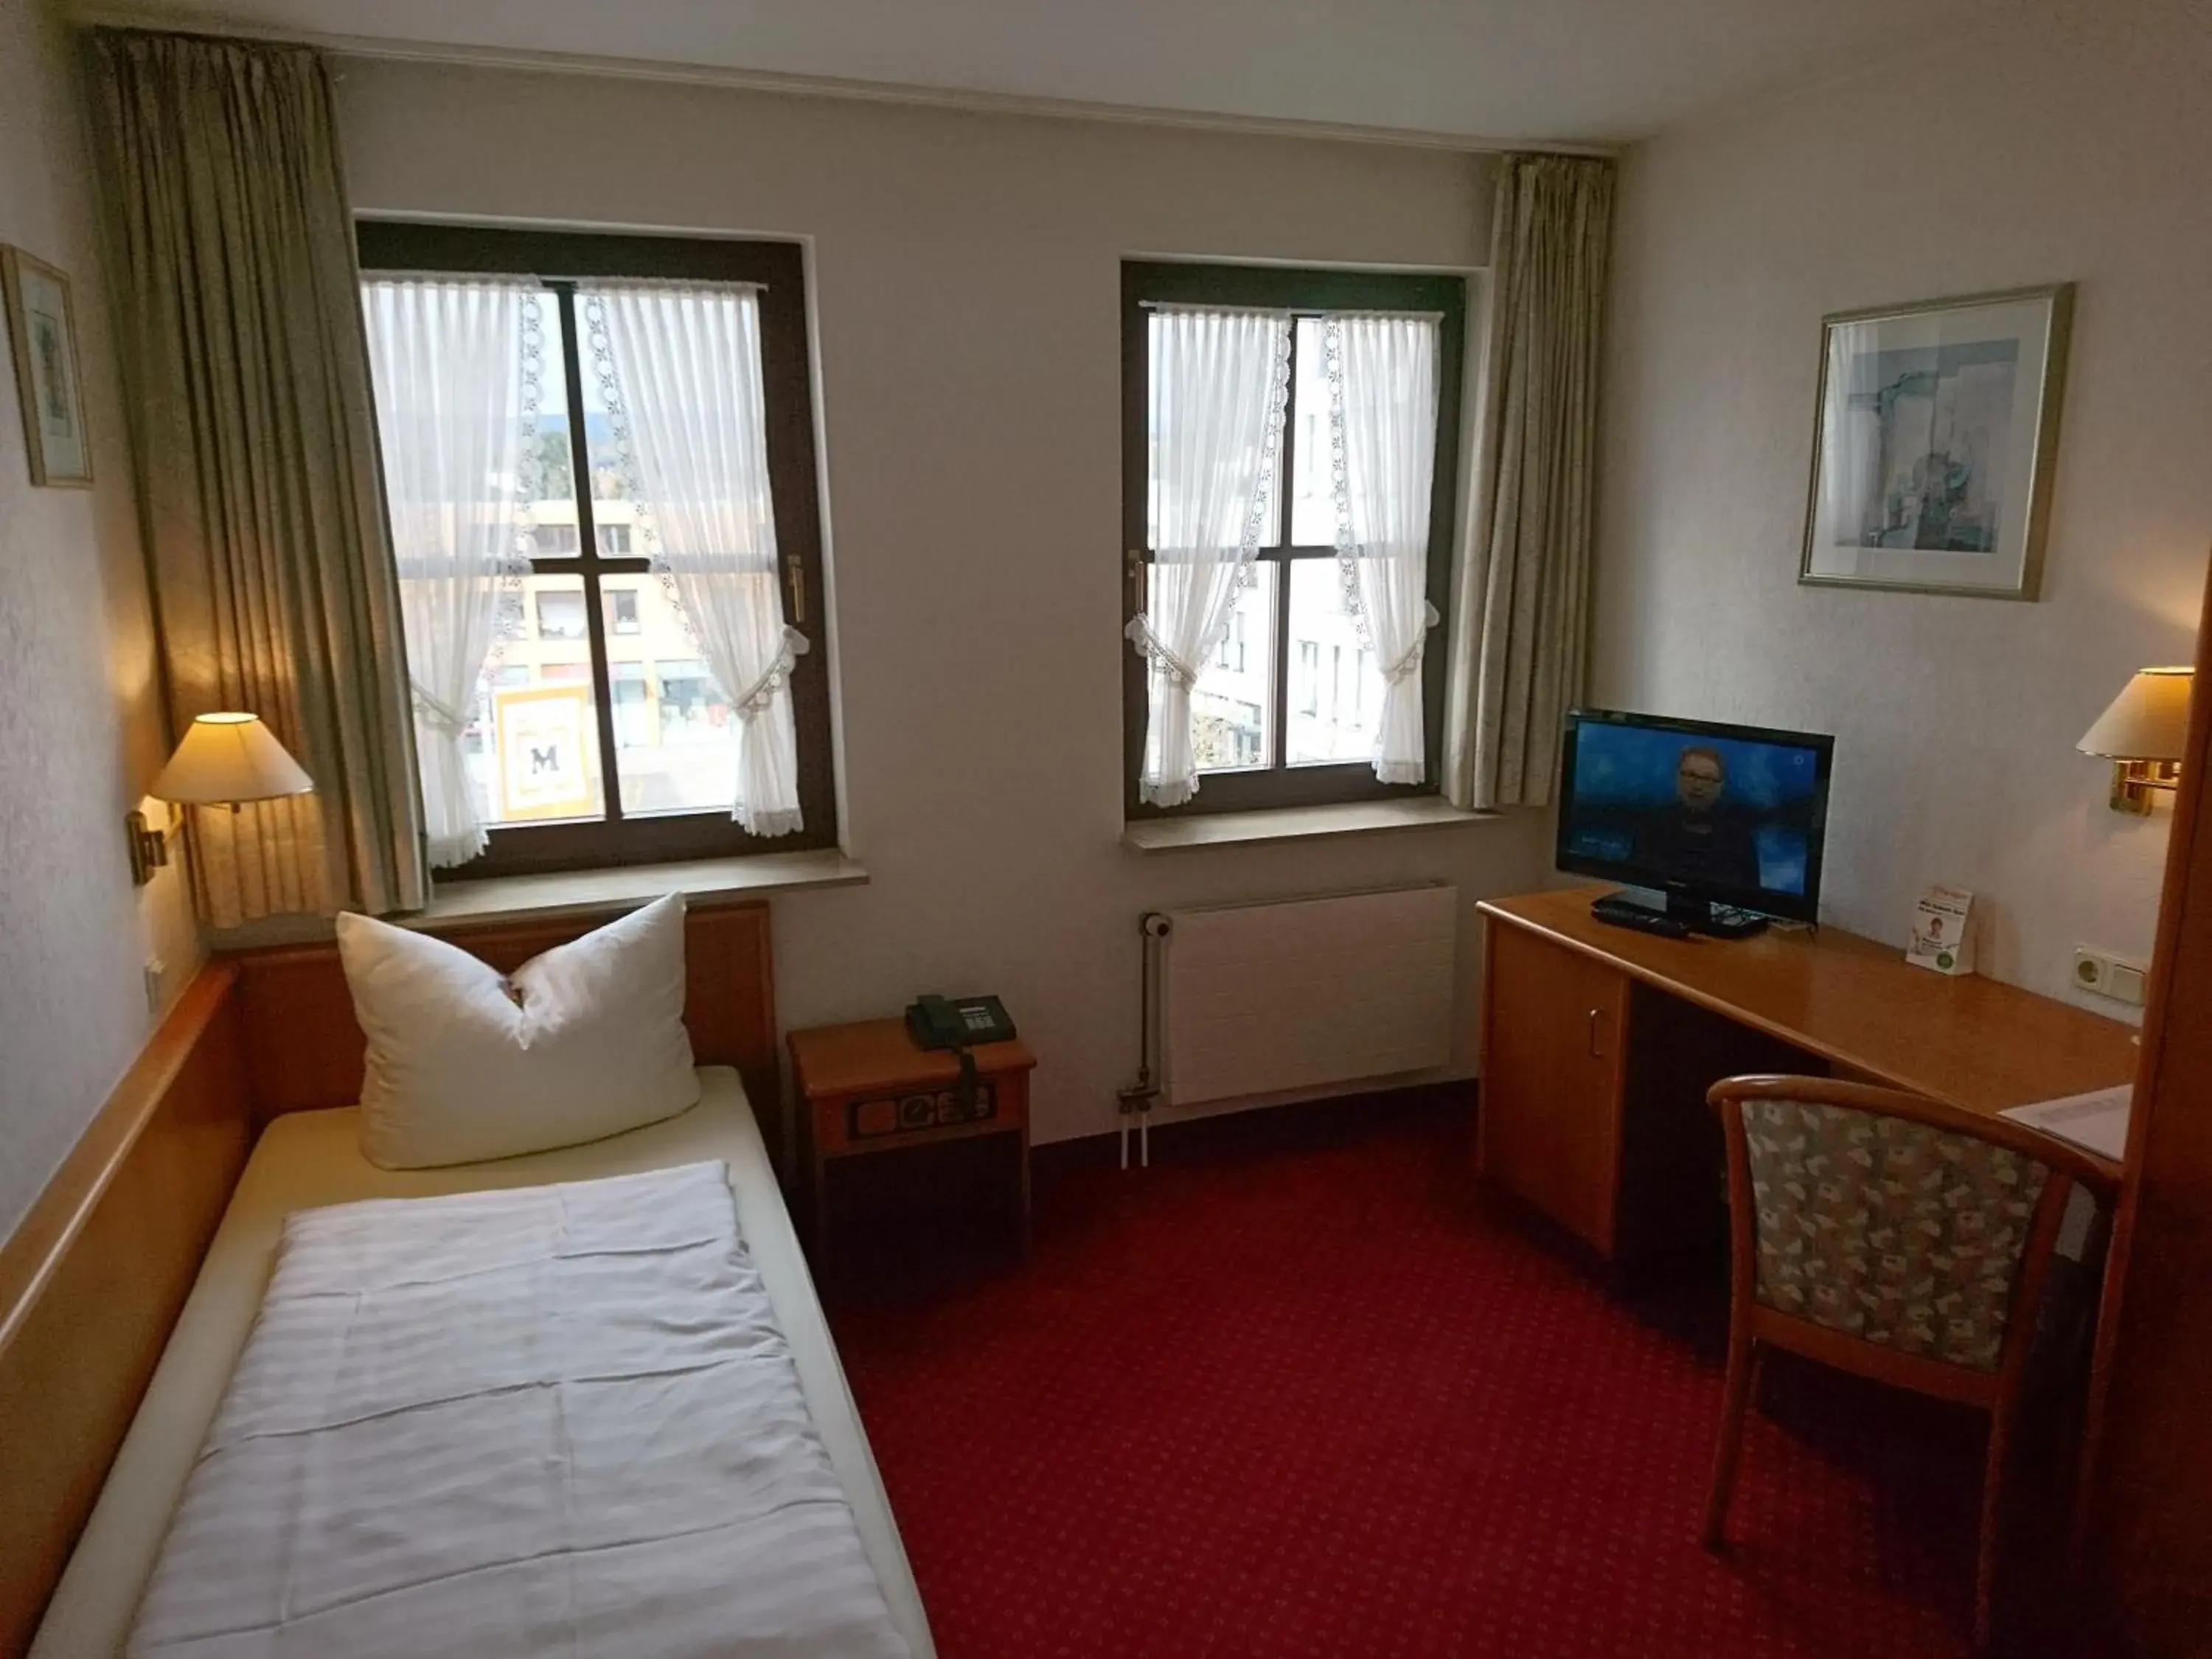 Bedroom, Bed in Arkaden Hotel